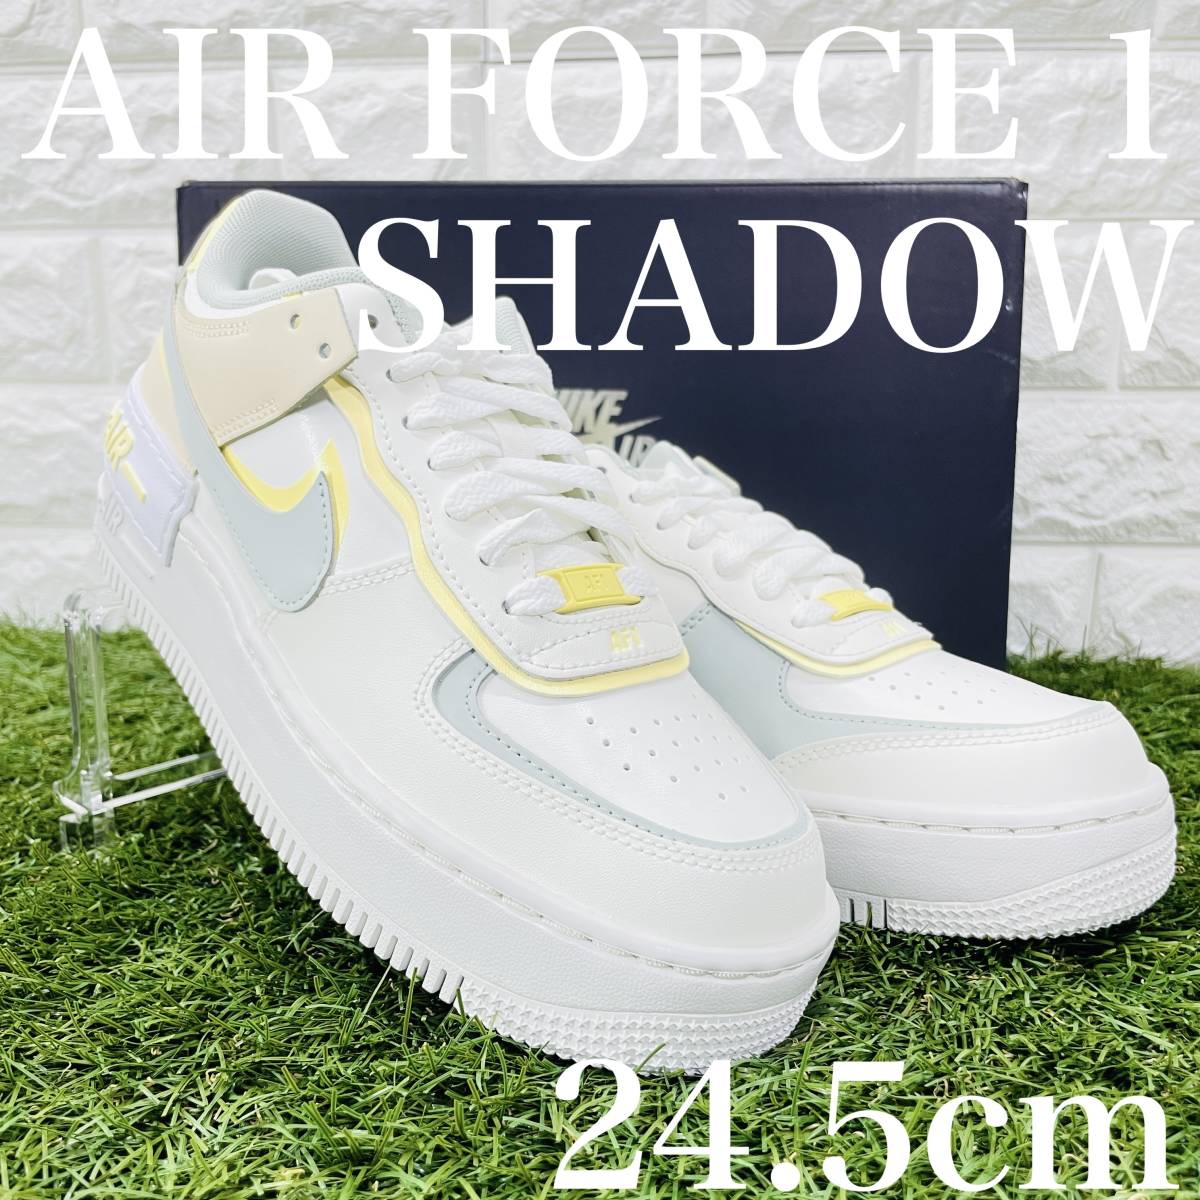 即決 ナイキ ウィメンズ エアフォース1 シャドウ Nike WMNS Air Force 1 Shadow AF1 24.5cm 送料込み DR7883-101